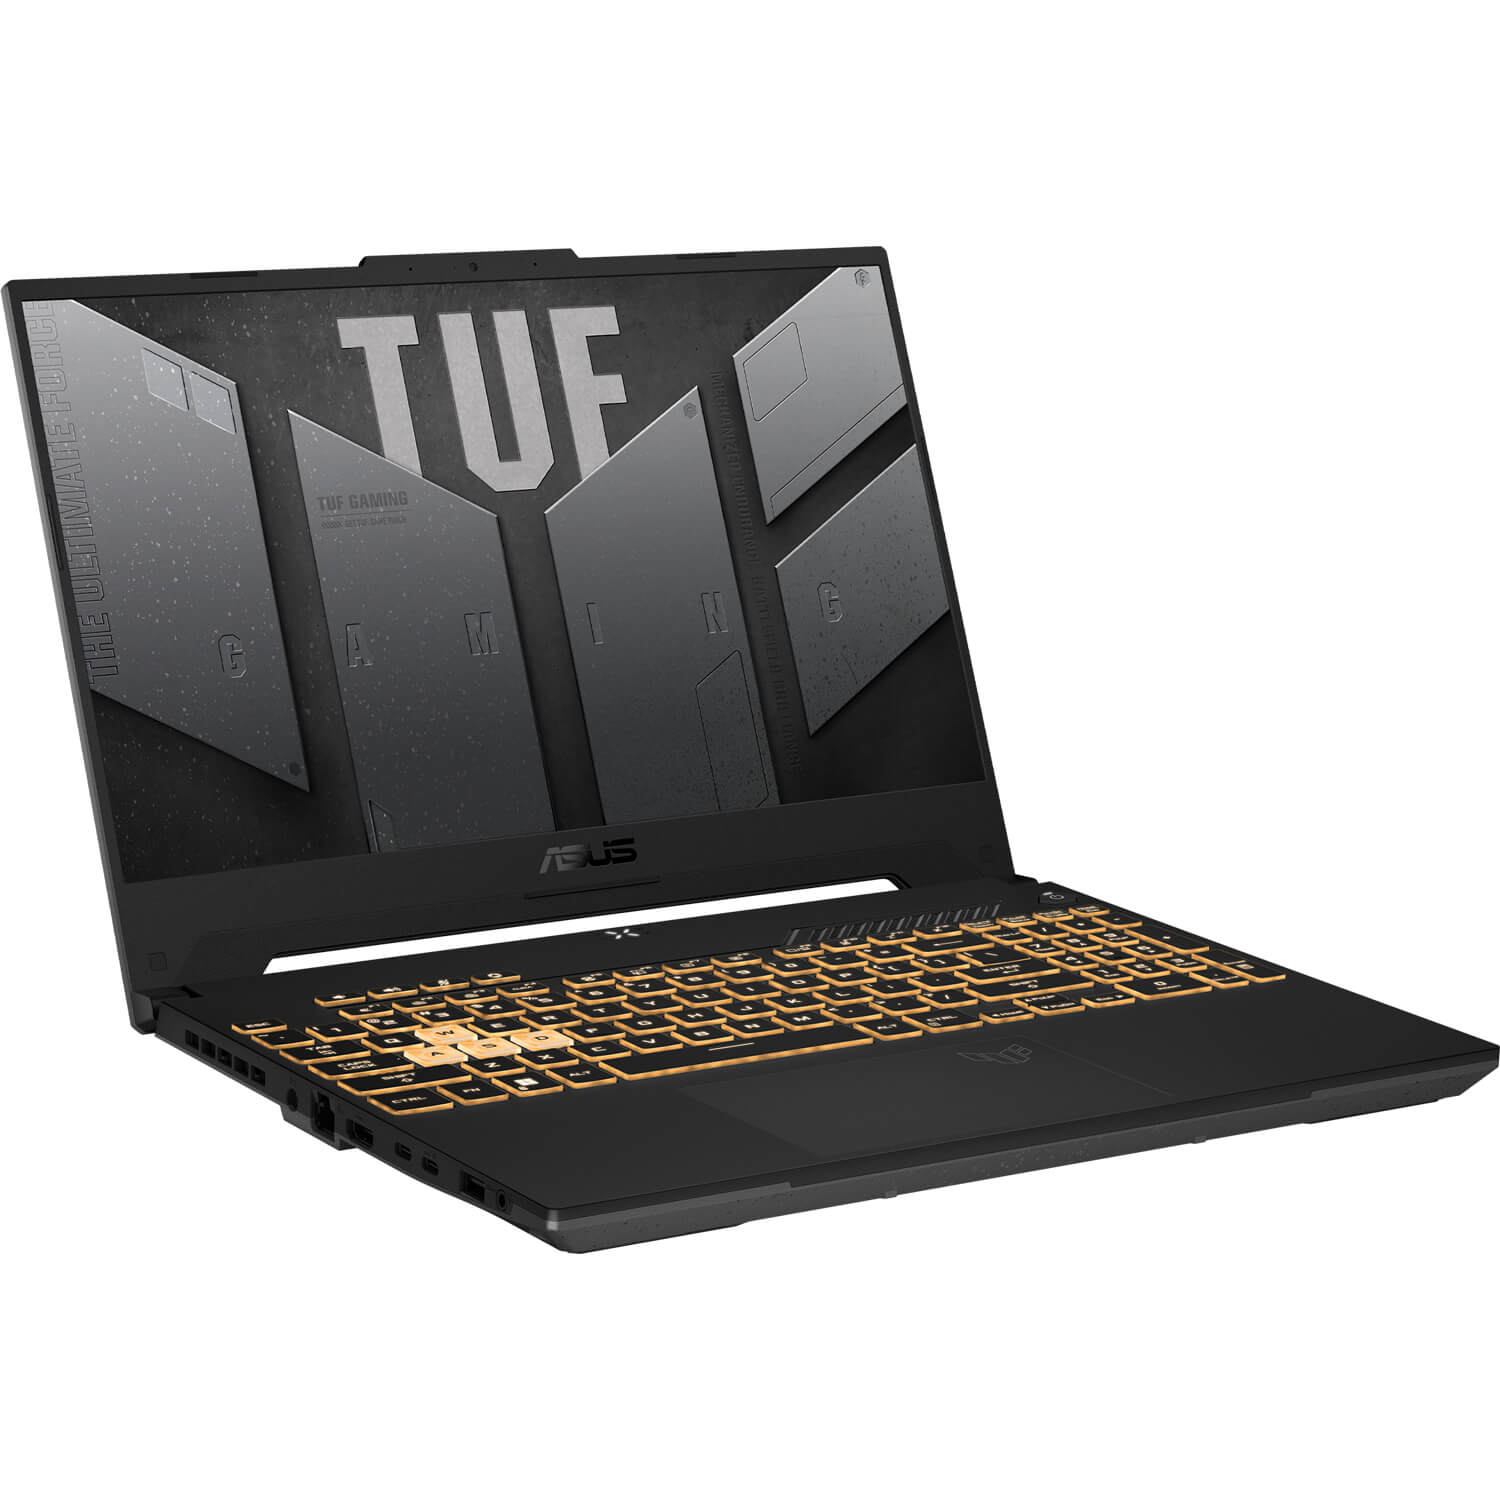 لپ تاپ گیمینگ ایسوس TUF Gaming F15 FX507ZV4-LP097